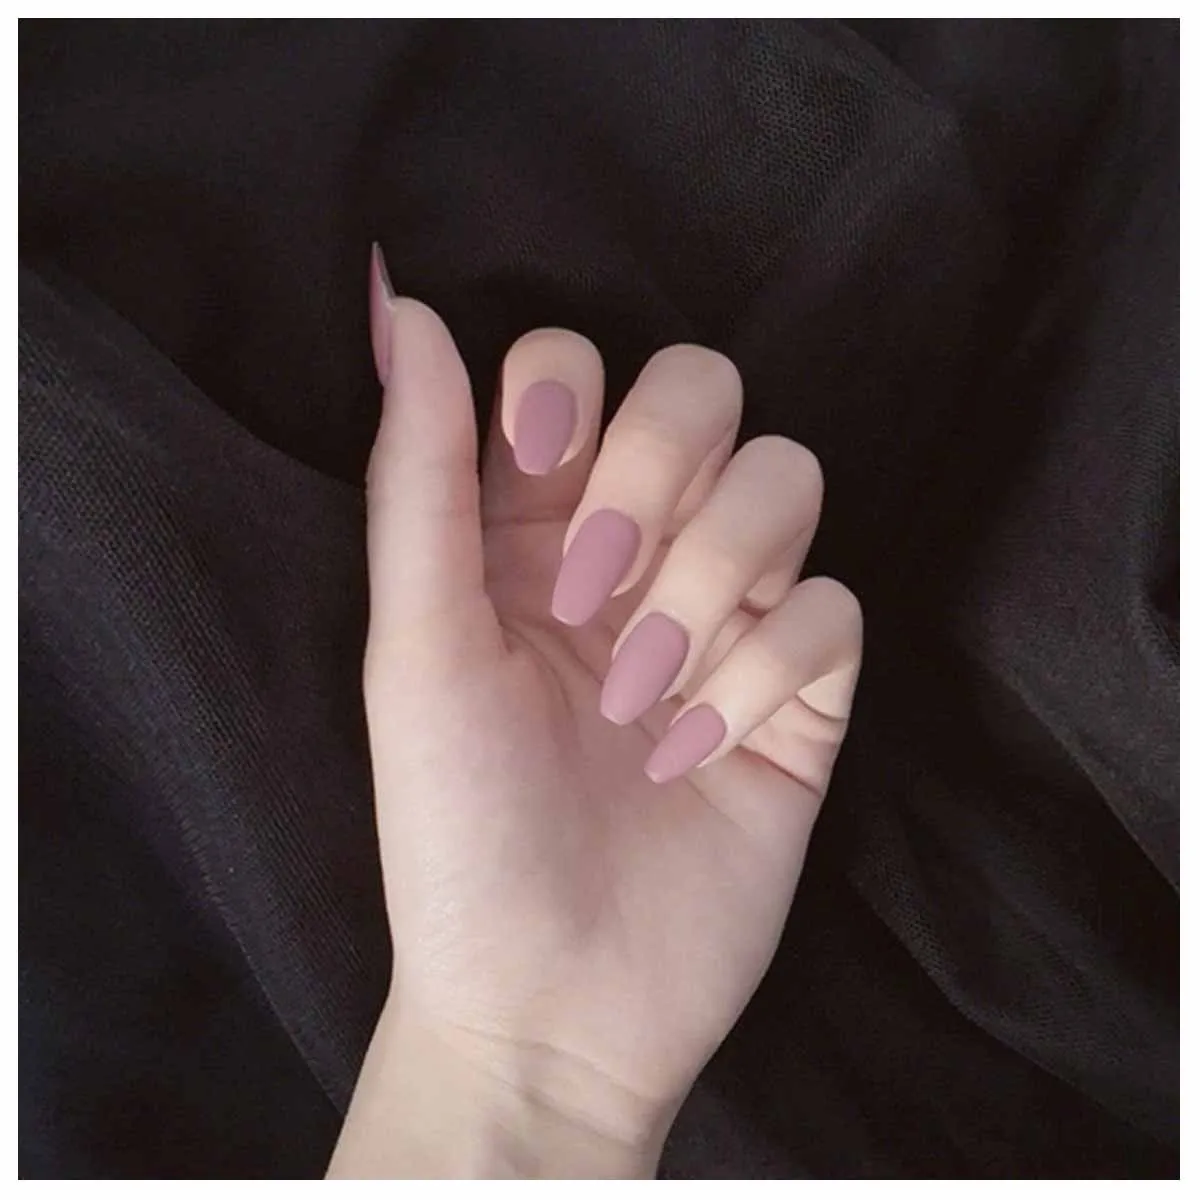 24 шт. в европейском и американском стиле, розовые матовые накладные ногти, длинные квадратные кончики для ногтей с клеем для девочек - Цвет: as show